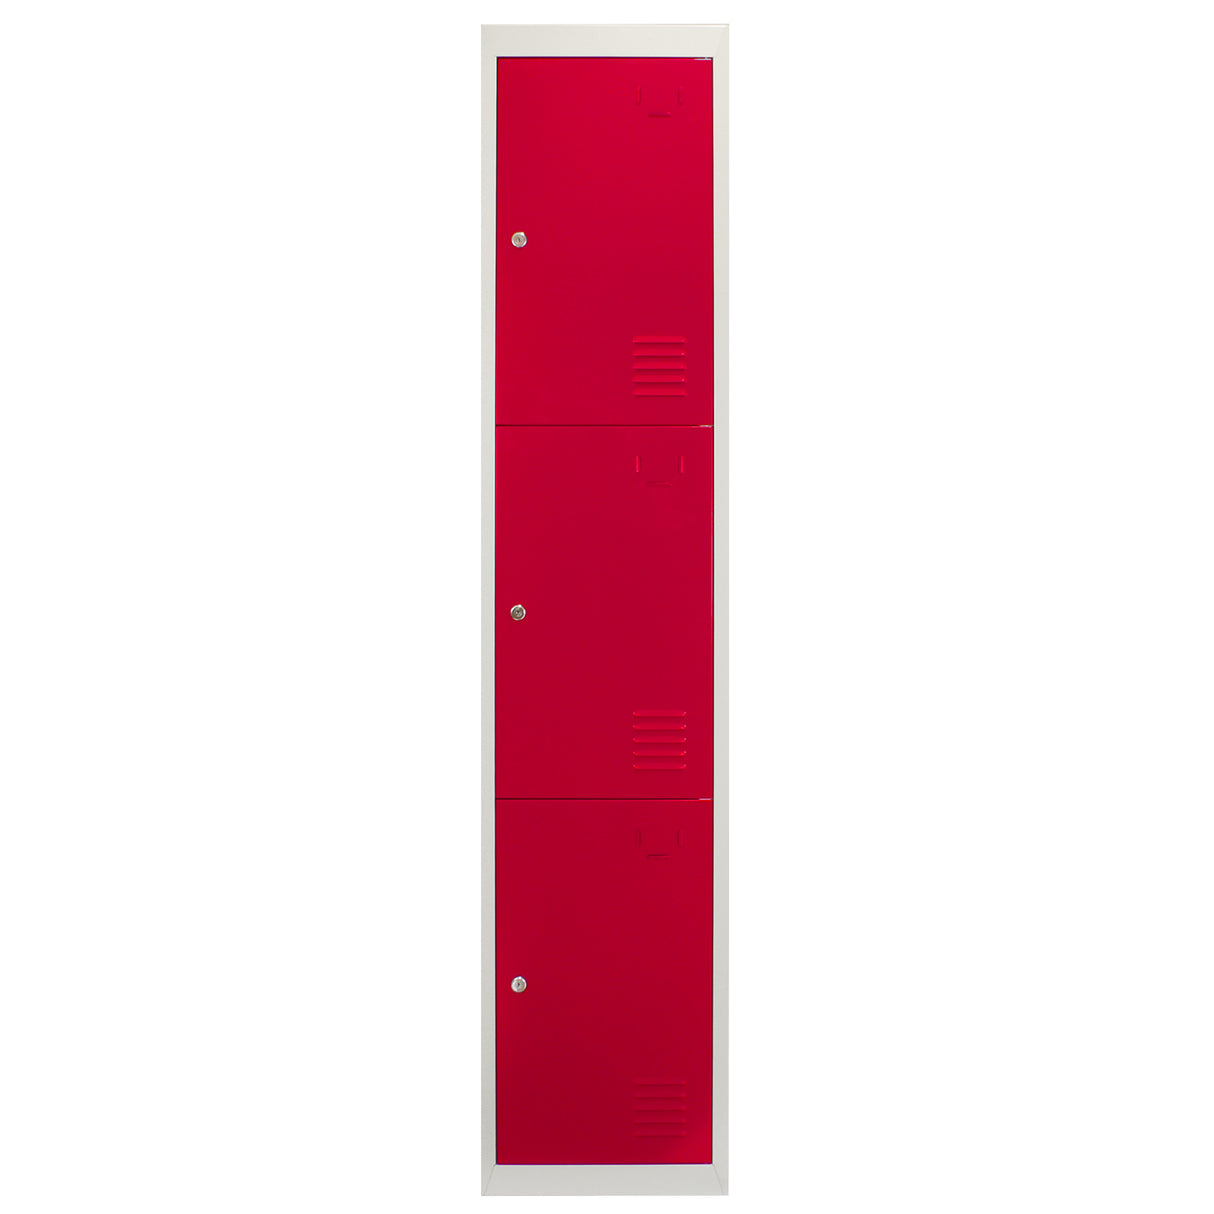 3 x Metal Storage Lockers - Three Doors, Red - Flatpack